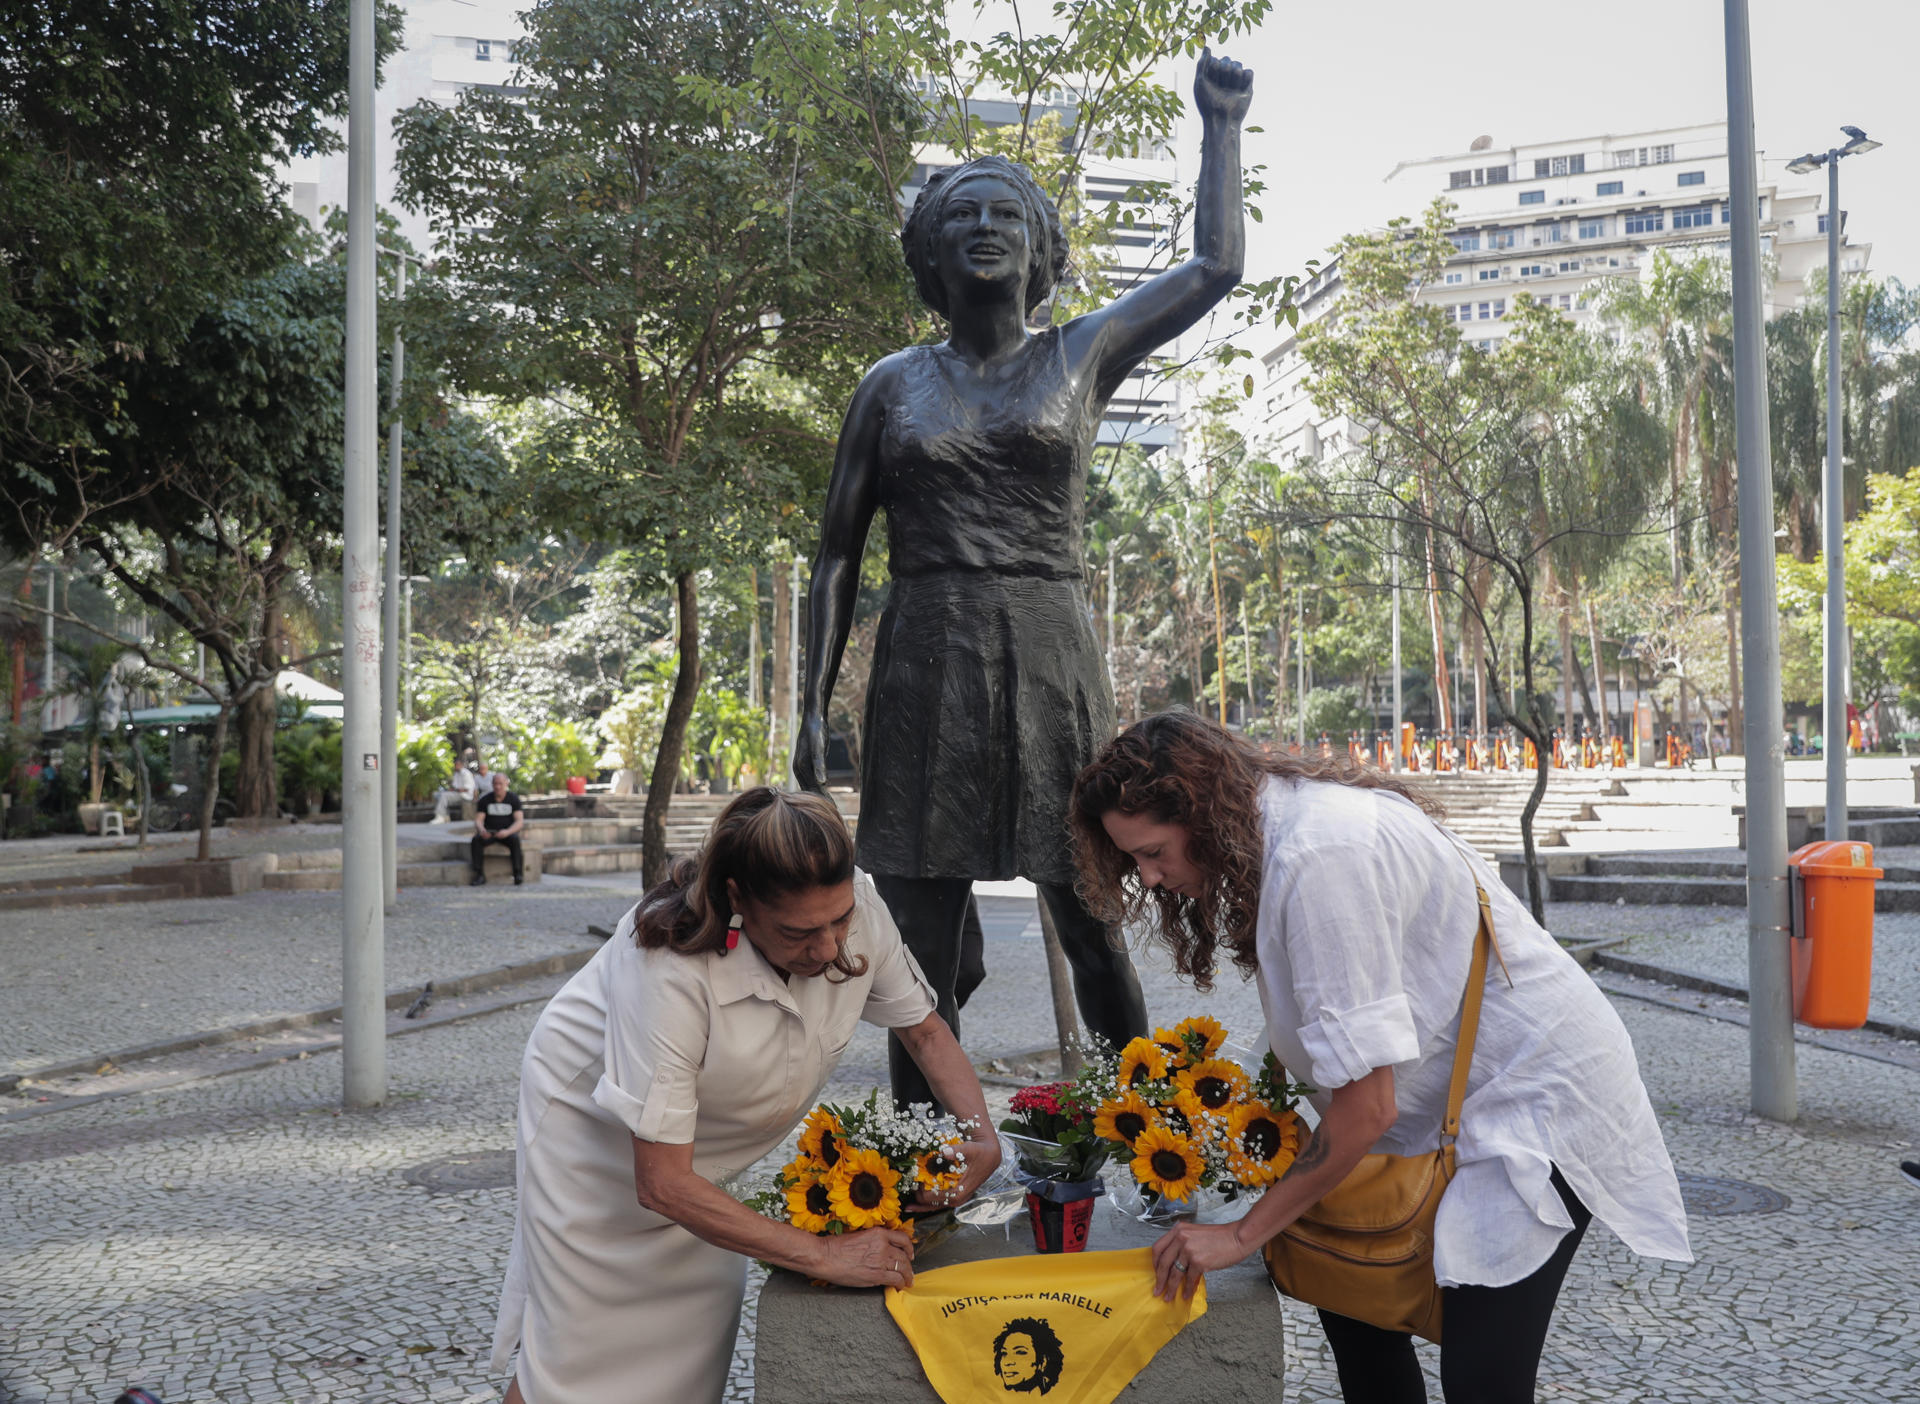 Mônica Benício (d) y Marinete da Silva (i), viuda y madre, respectivamente, de la concejala asesinada Marielle Franco, colocan flores y un pañuelo en su estatua durante un homenaje por el día de su cumpleaños, hoy, en Río de Janeiro (Brasil). EFE/André Coelho